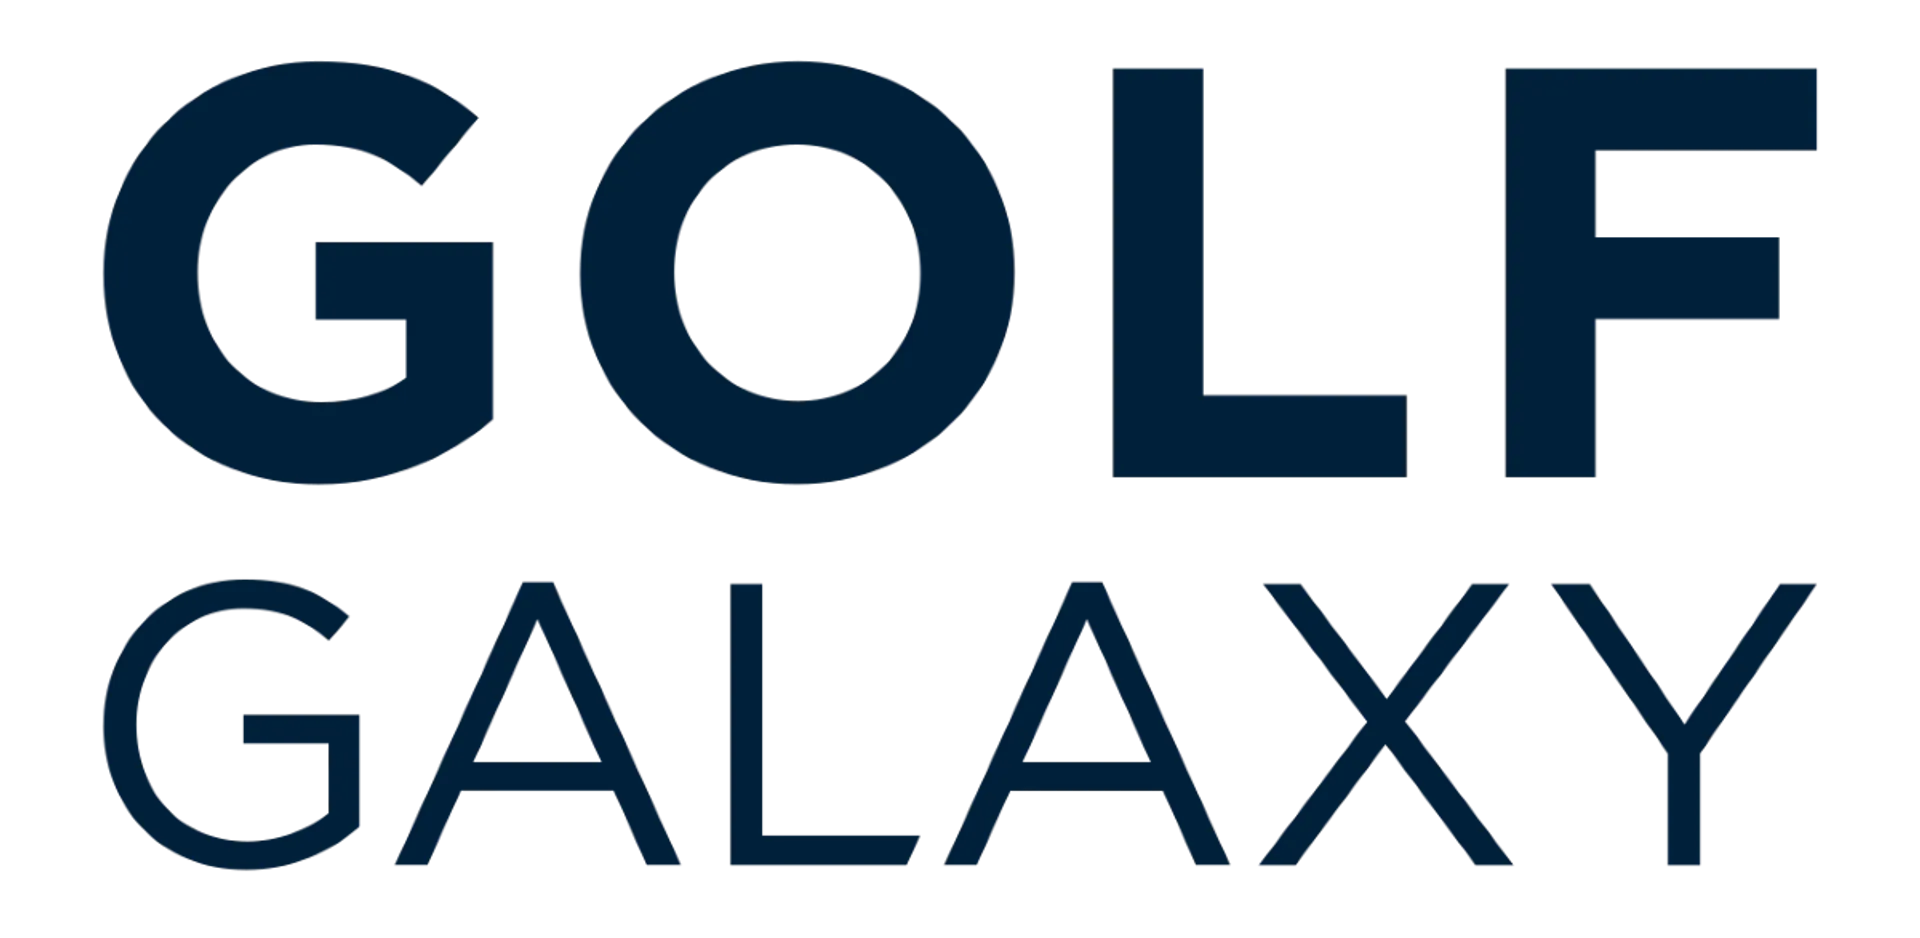 GOLF GALAXY logo. Current weekly ad